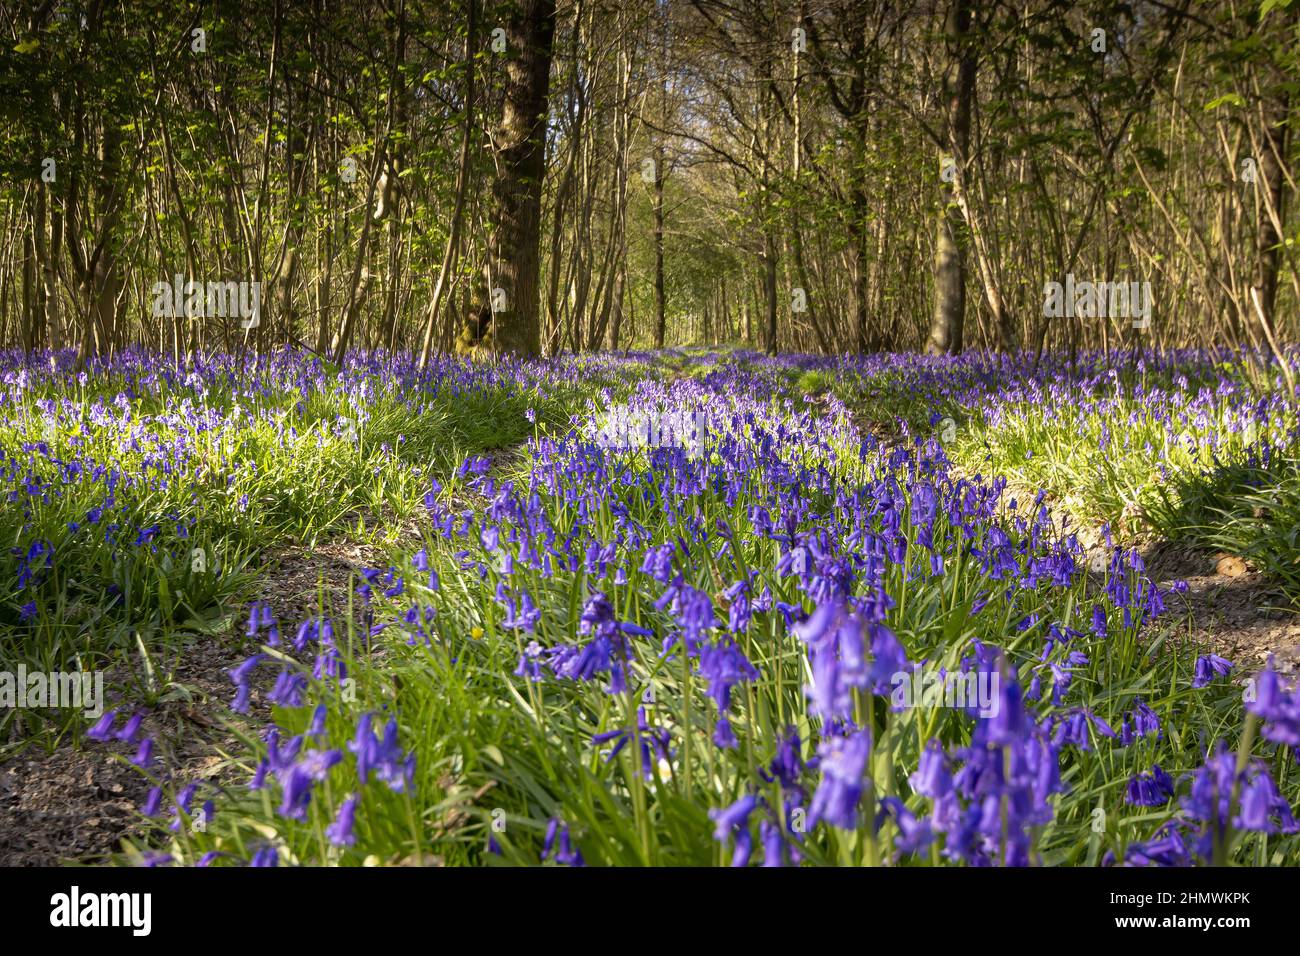 Bois et fleurs des bois au printemps dans la baie de Somme. Jacynthes sauvage, Arnica, ail des ours. Stock Photo